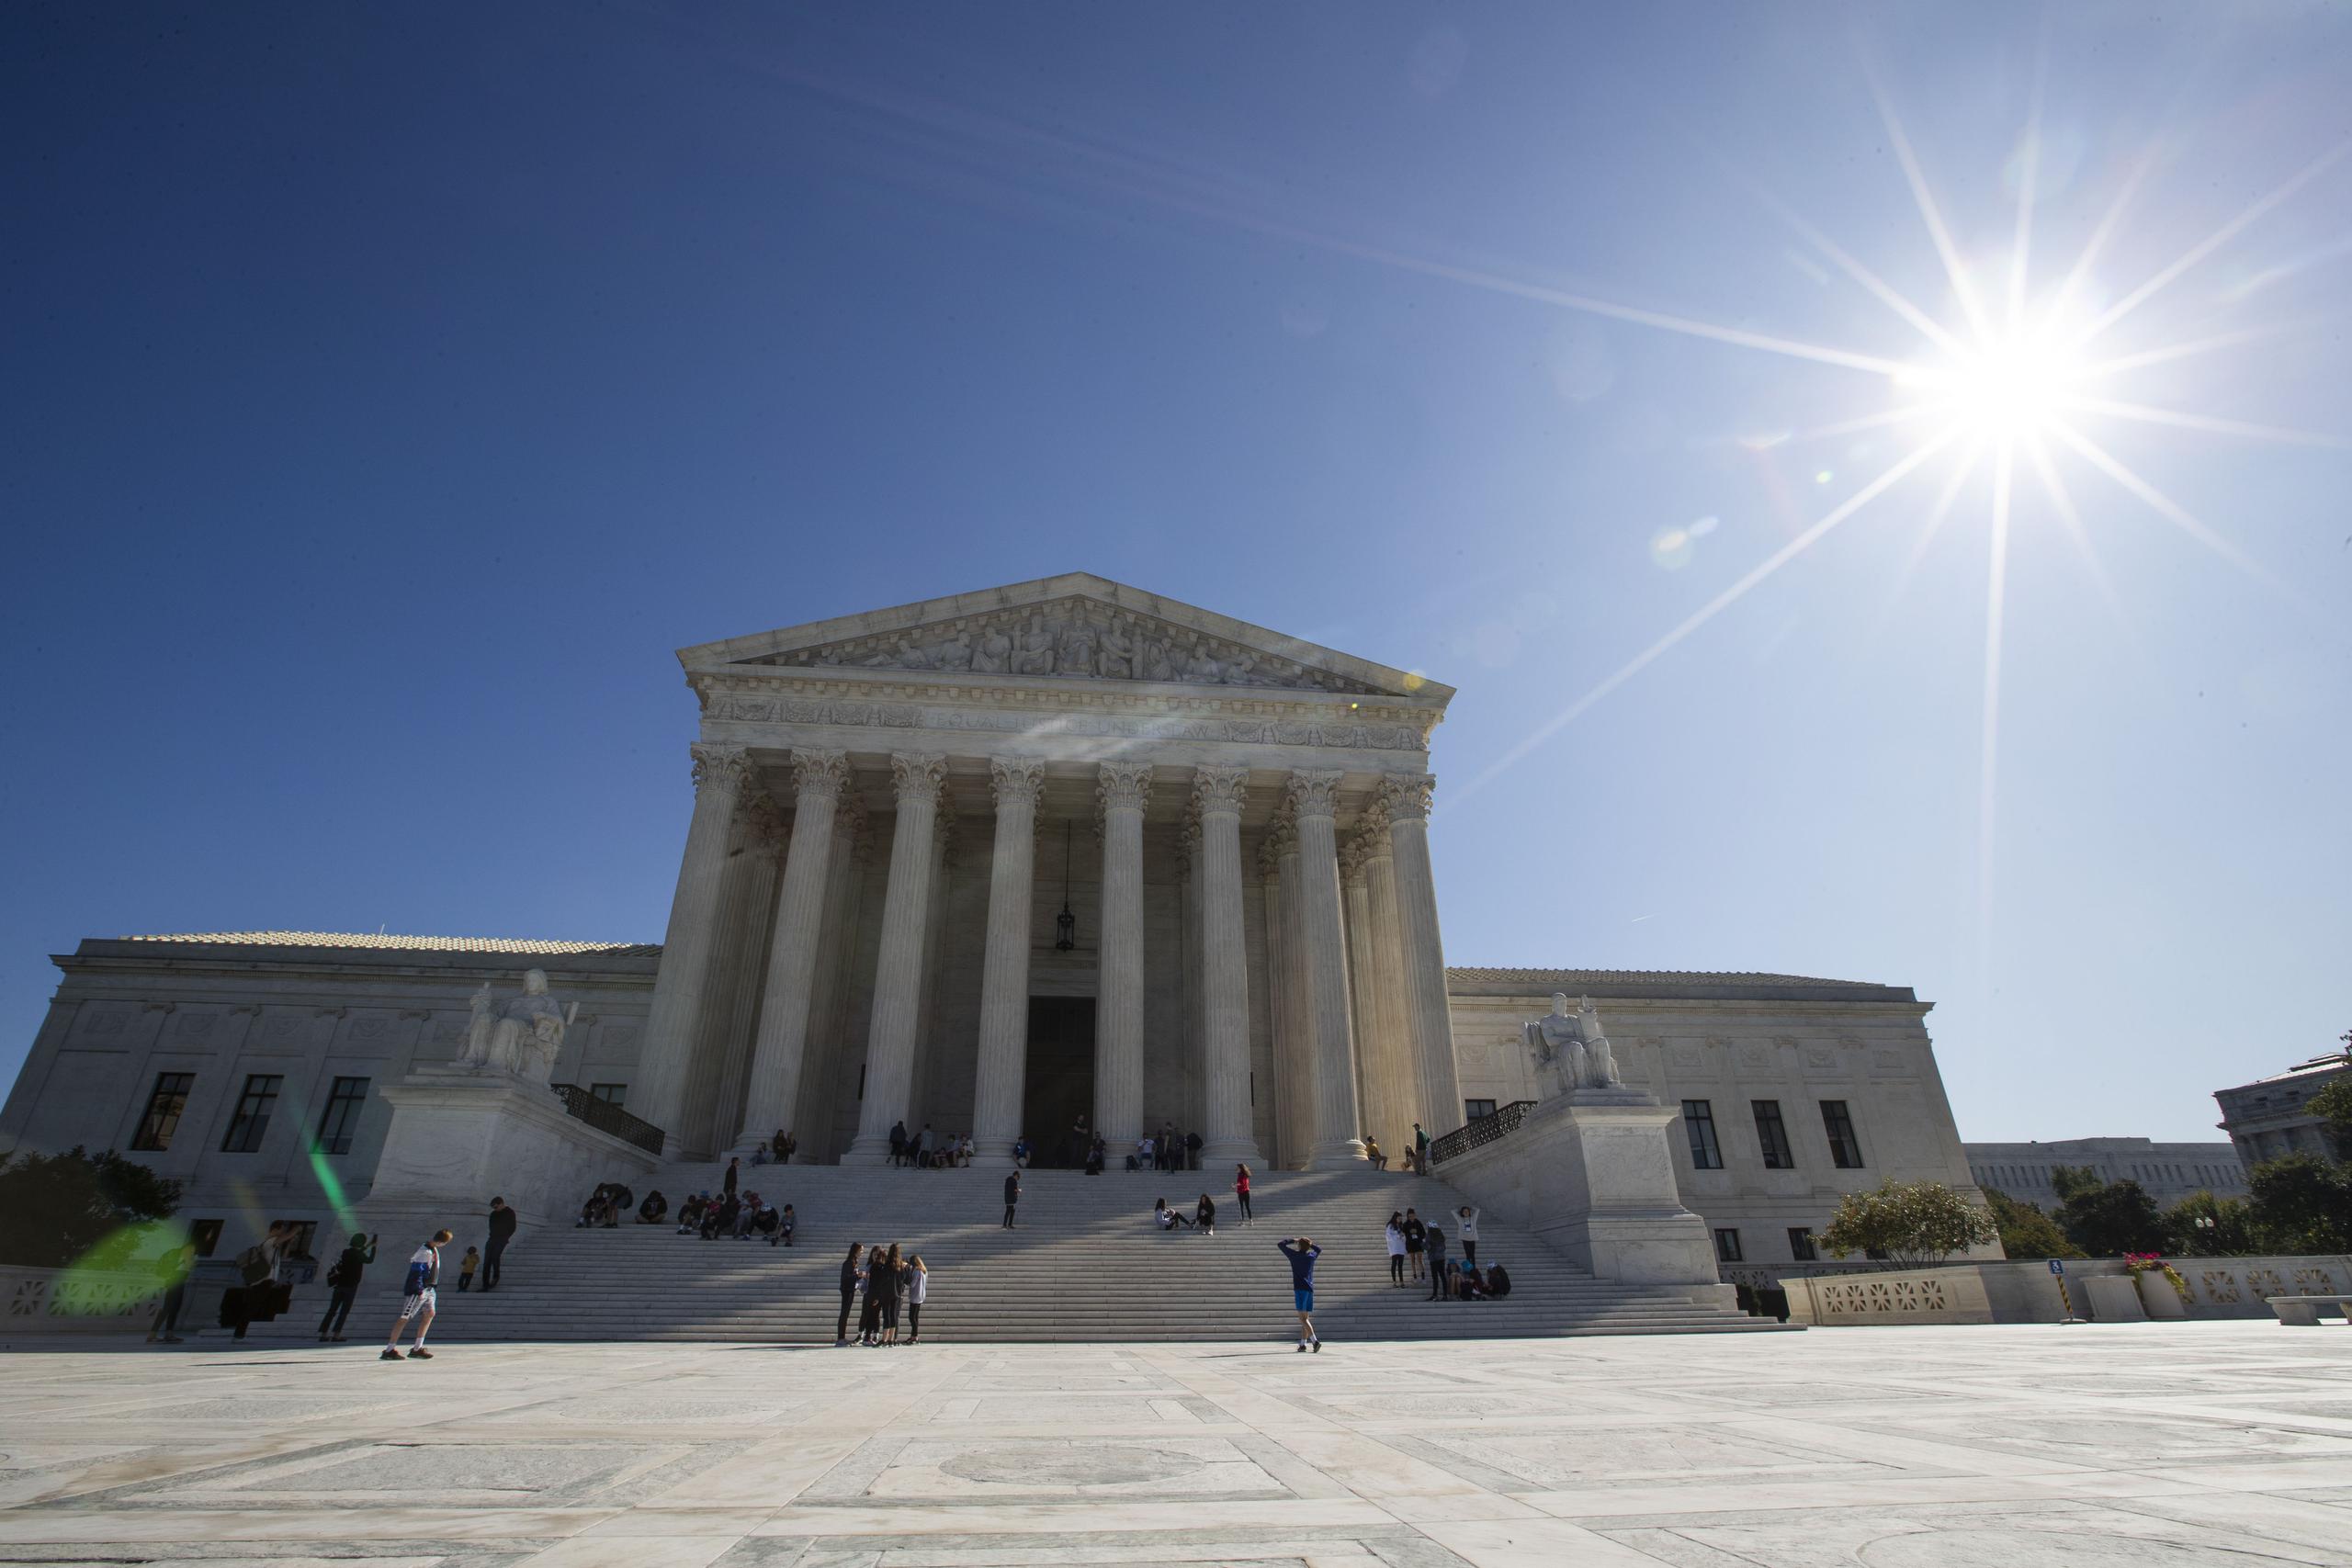 El Tribunal Supremo de Estados Unidos en Washington, D.C.